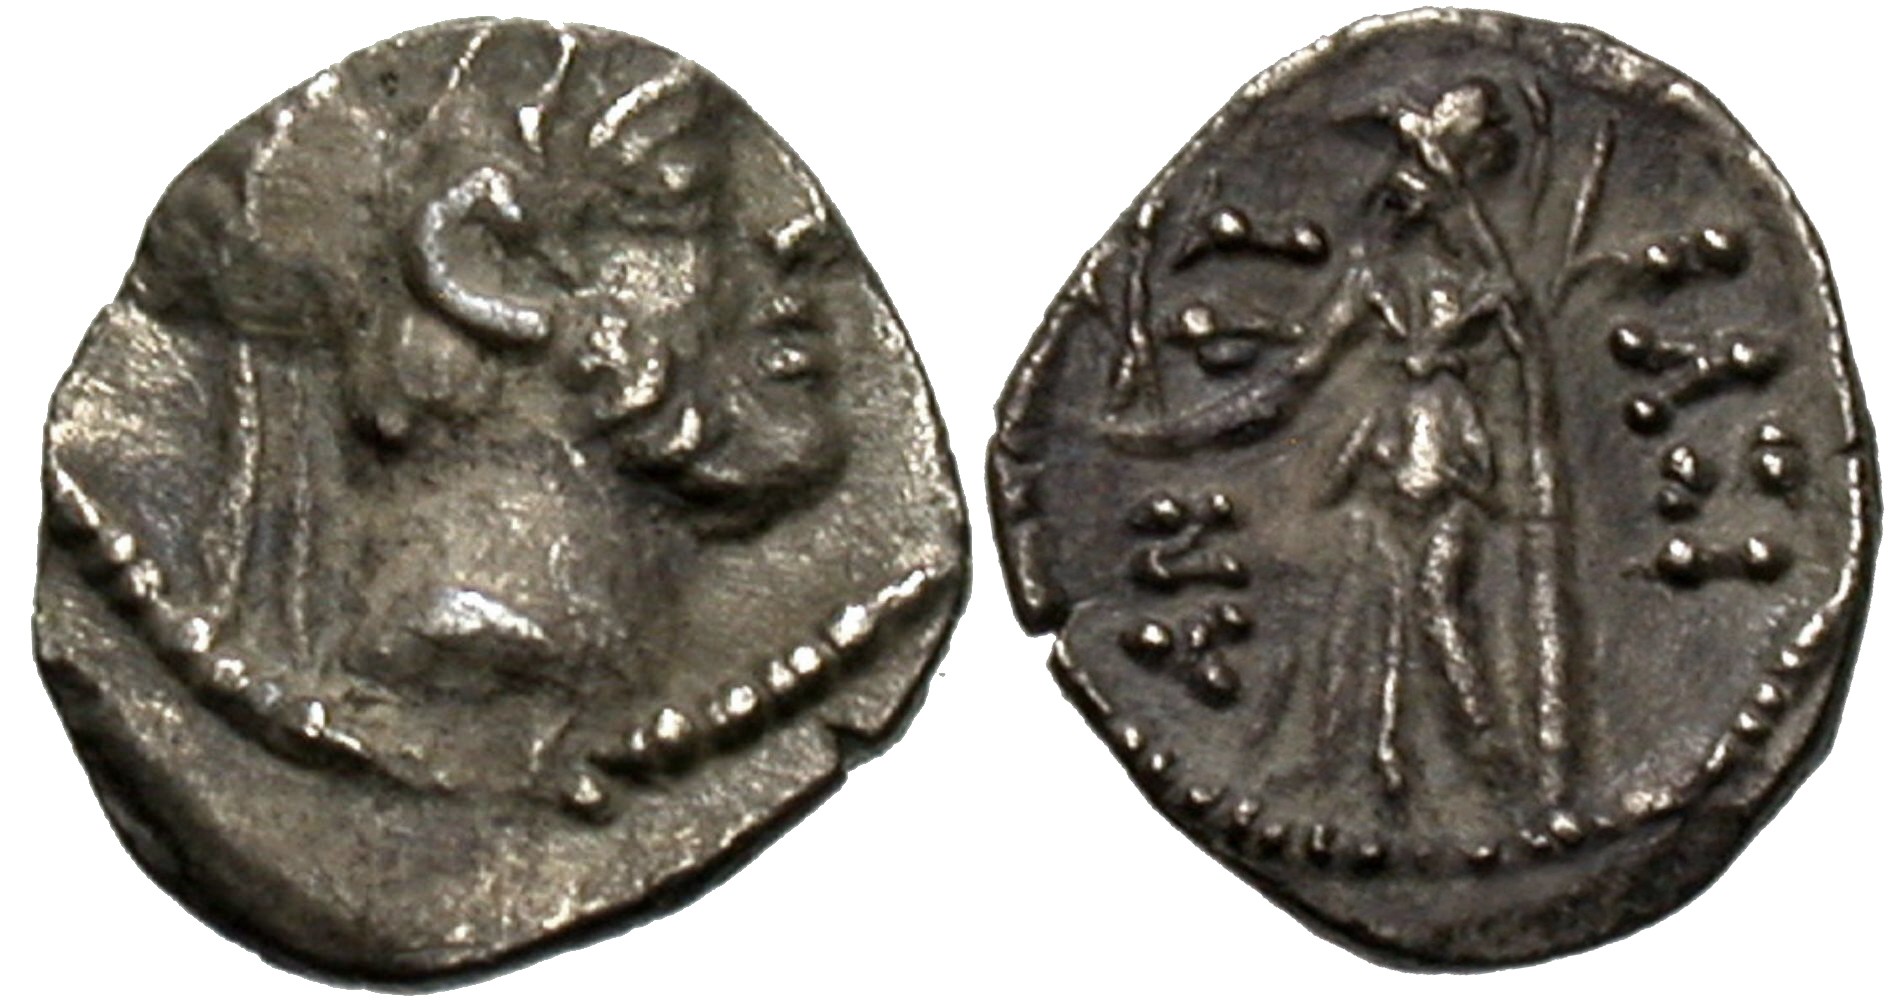 Antiochus IX